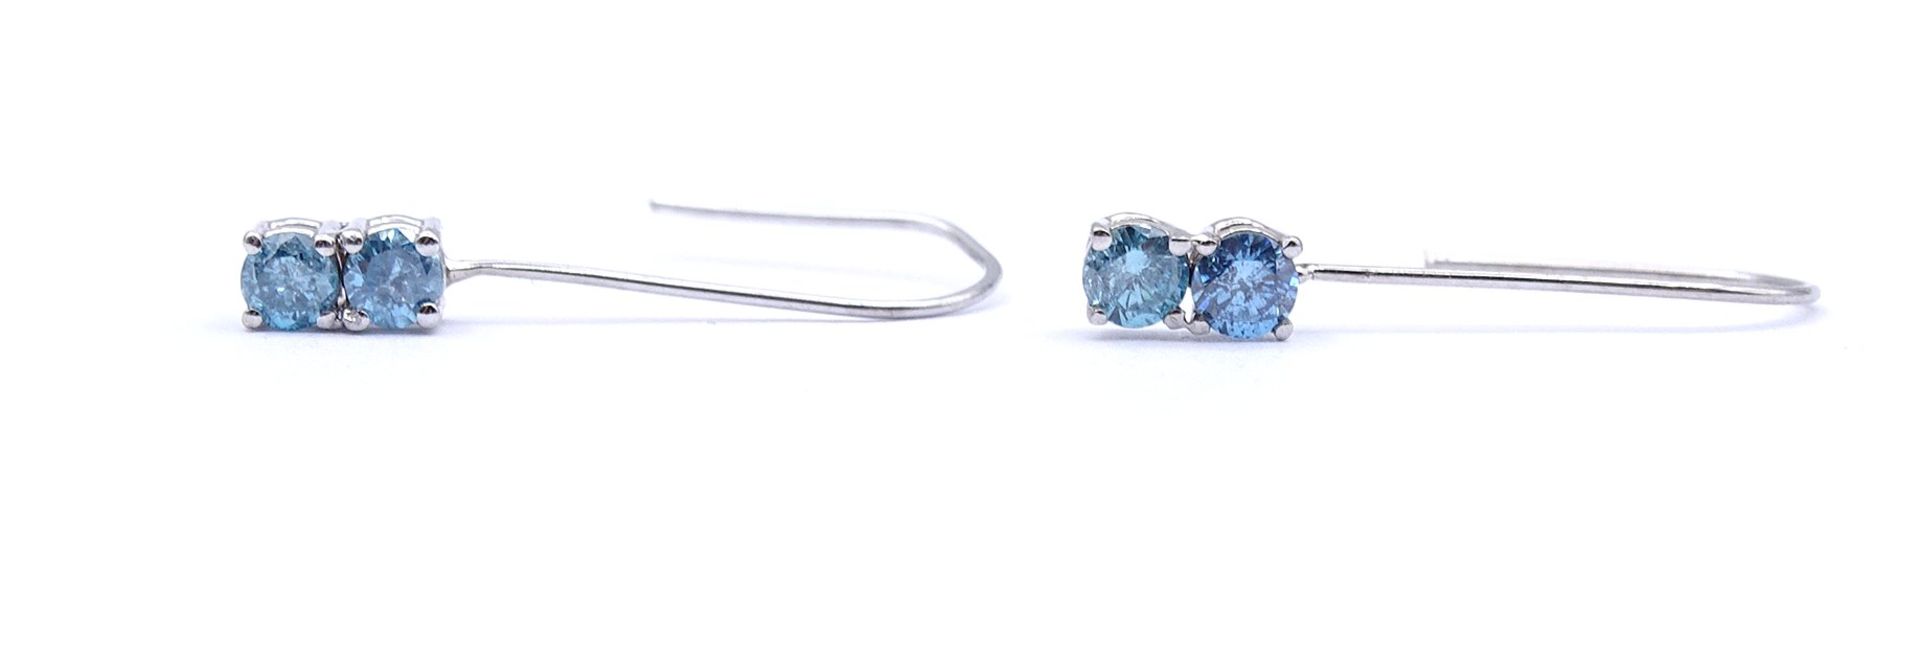 Paar Ohrhänger mit Diamanten , Fancy Blue zus. 0,30ct., WG 14K ungest., L. 2,0cm, zus. 0,56g.Gold g - Image 3 of 3